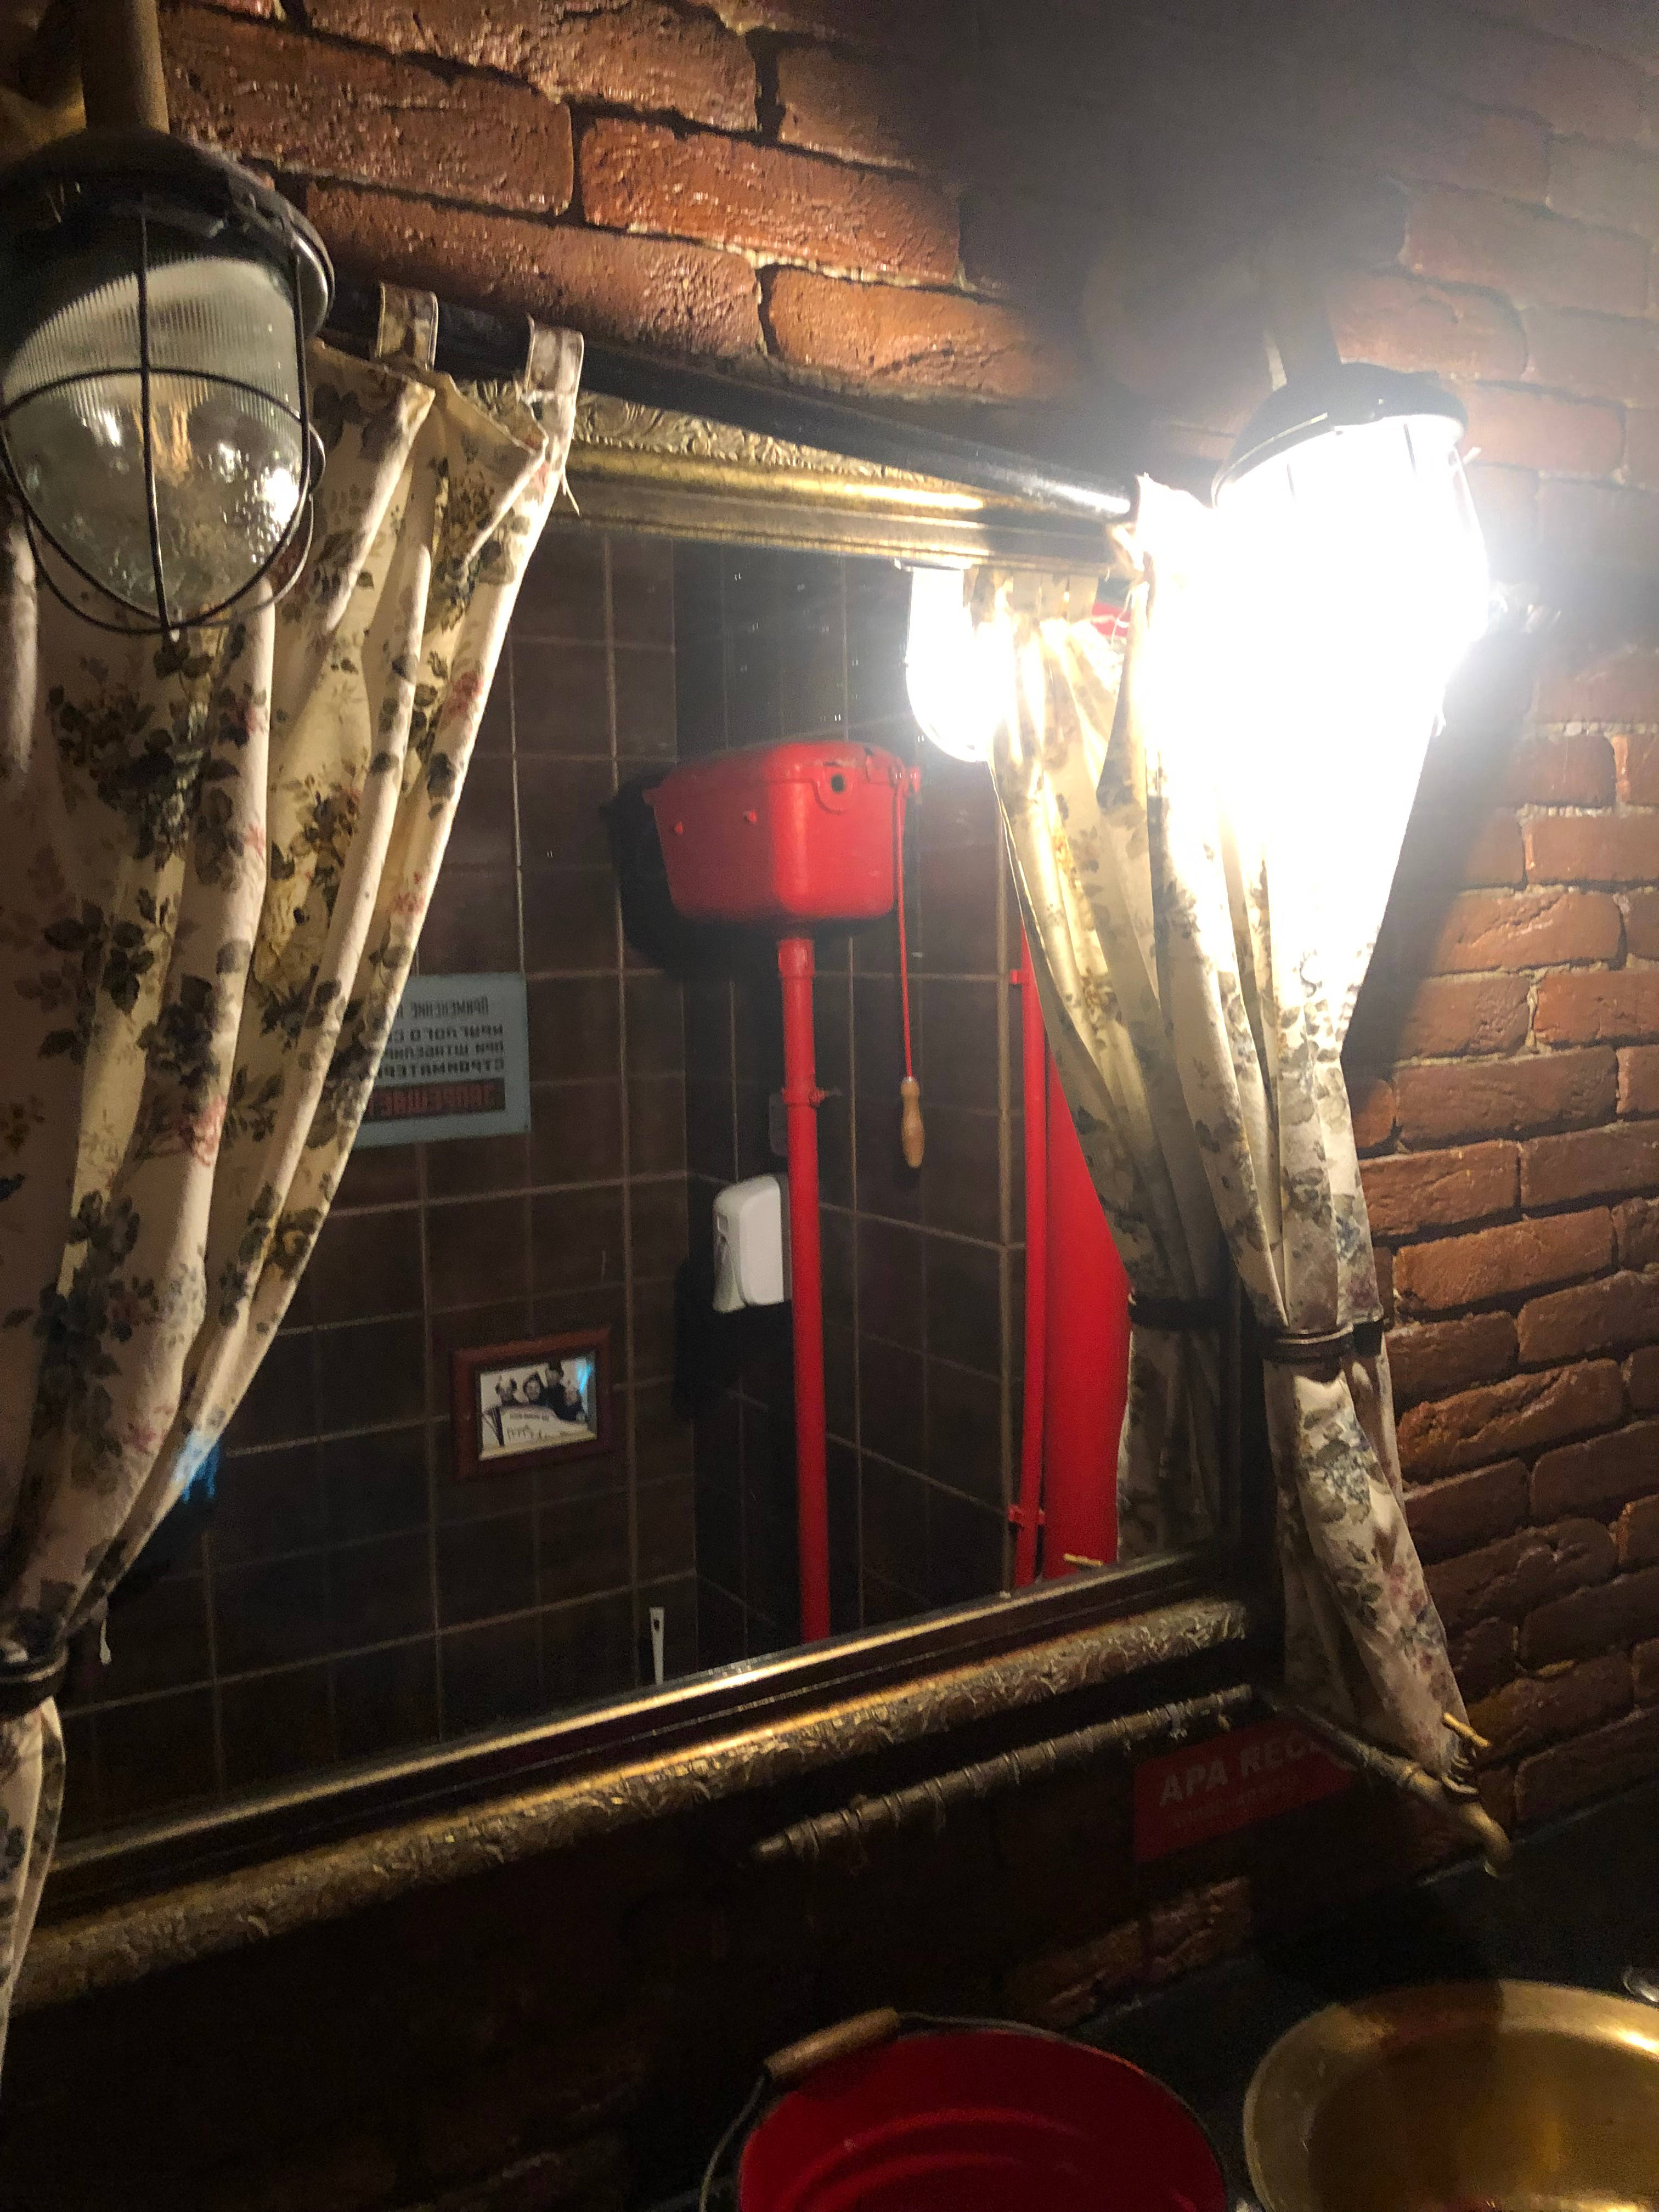 Spiegelansicht der Toilette im Restaurant "Eli Peli" Moldawien